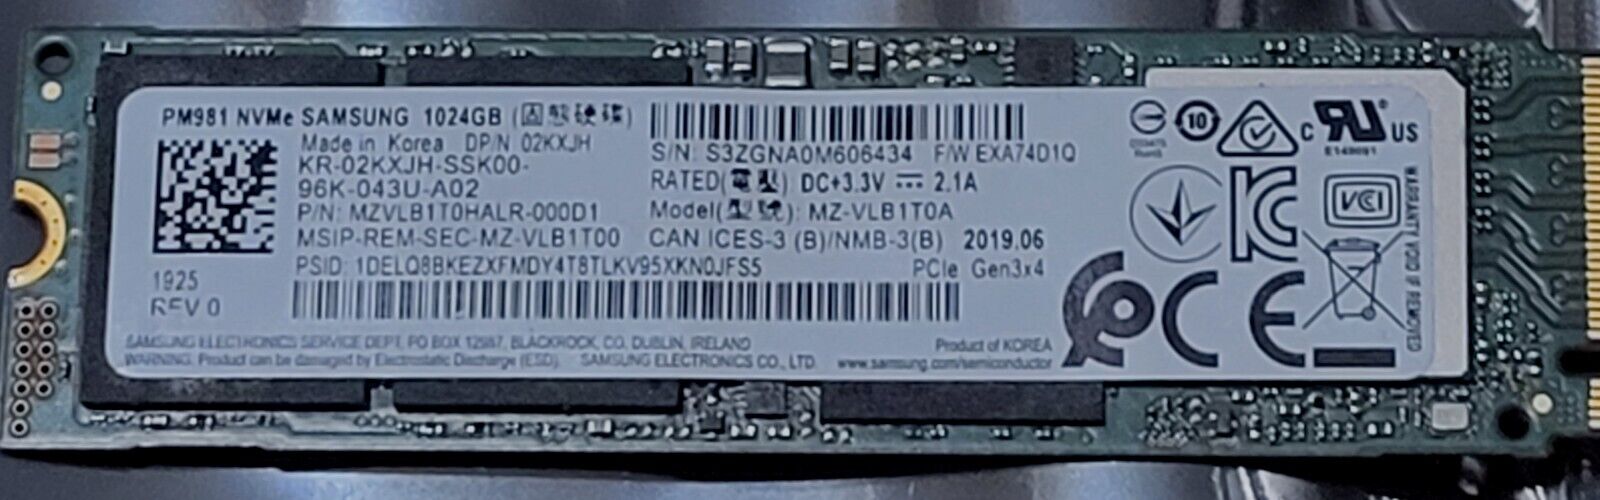 Samsung MZ-VLB1T0A MZVLB1T0HALR-000D1 02KXJH M.2 2280 1TB SSD